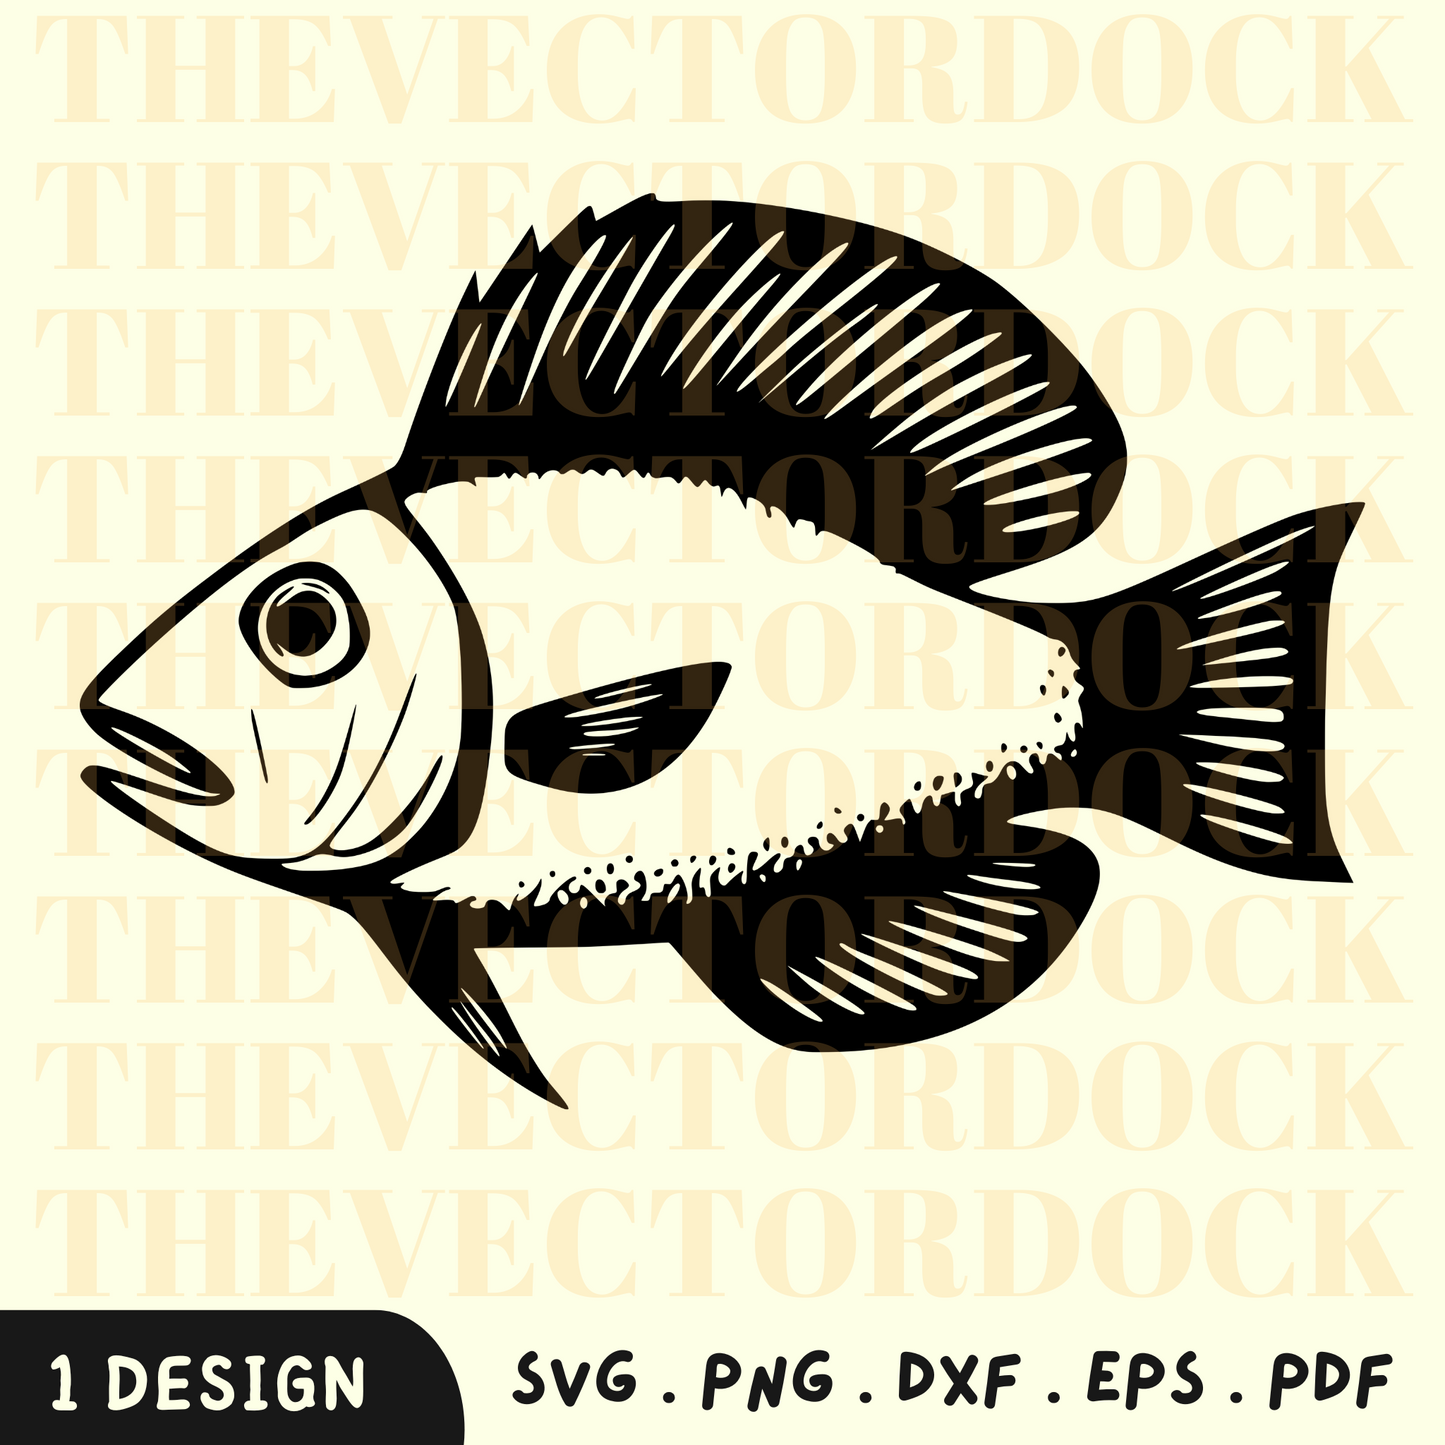 Pescado SVG Diseño, Pescado DXF, Pesca SVG, Pescado Vector 5